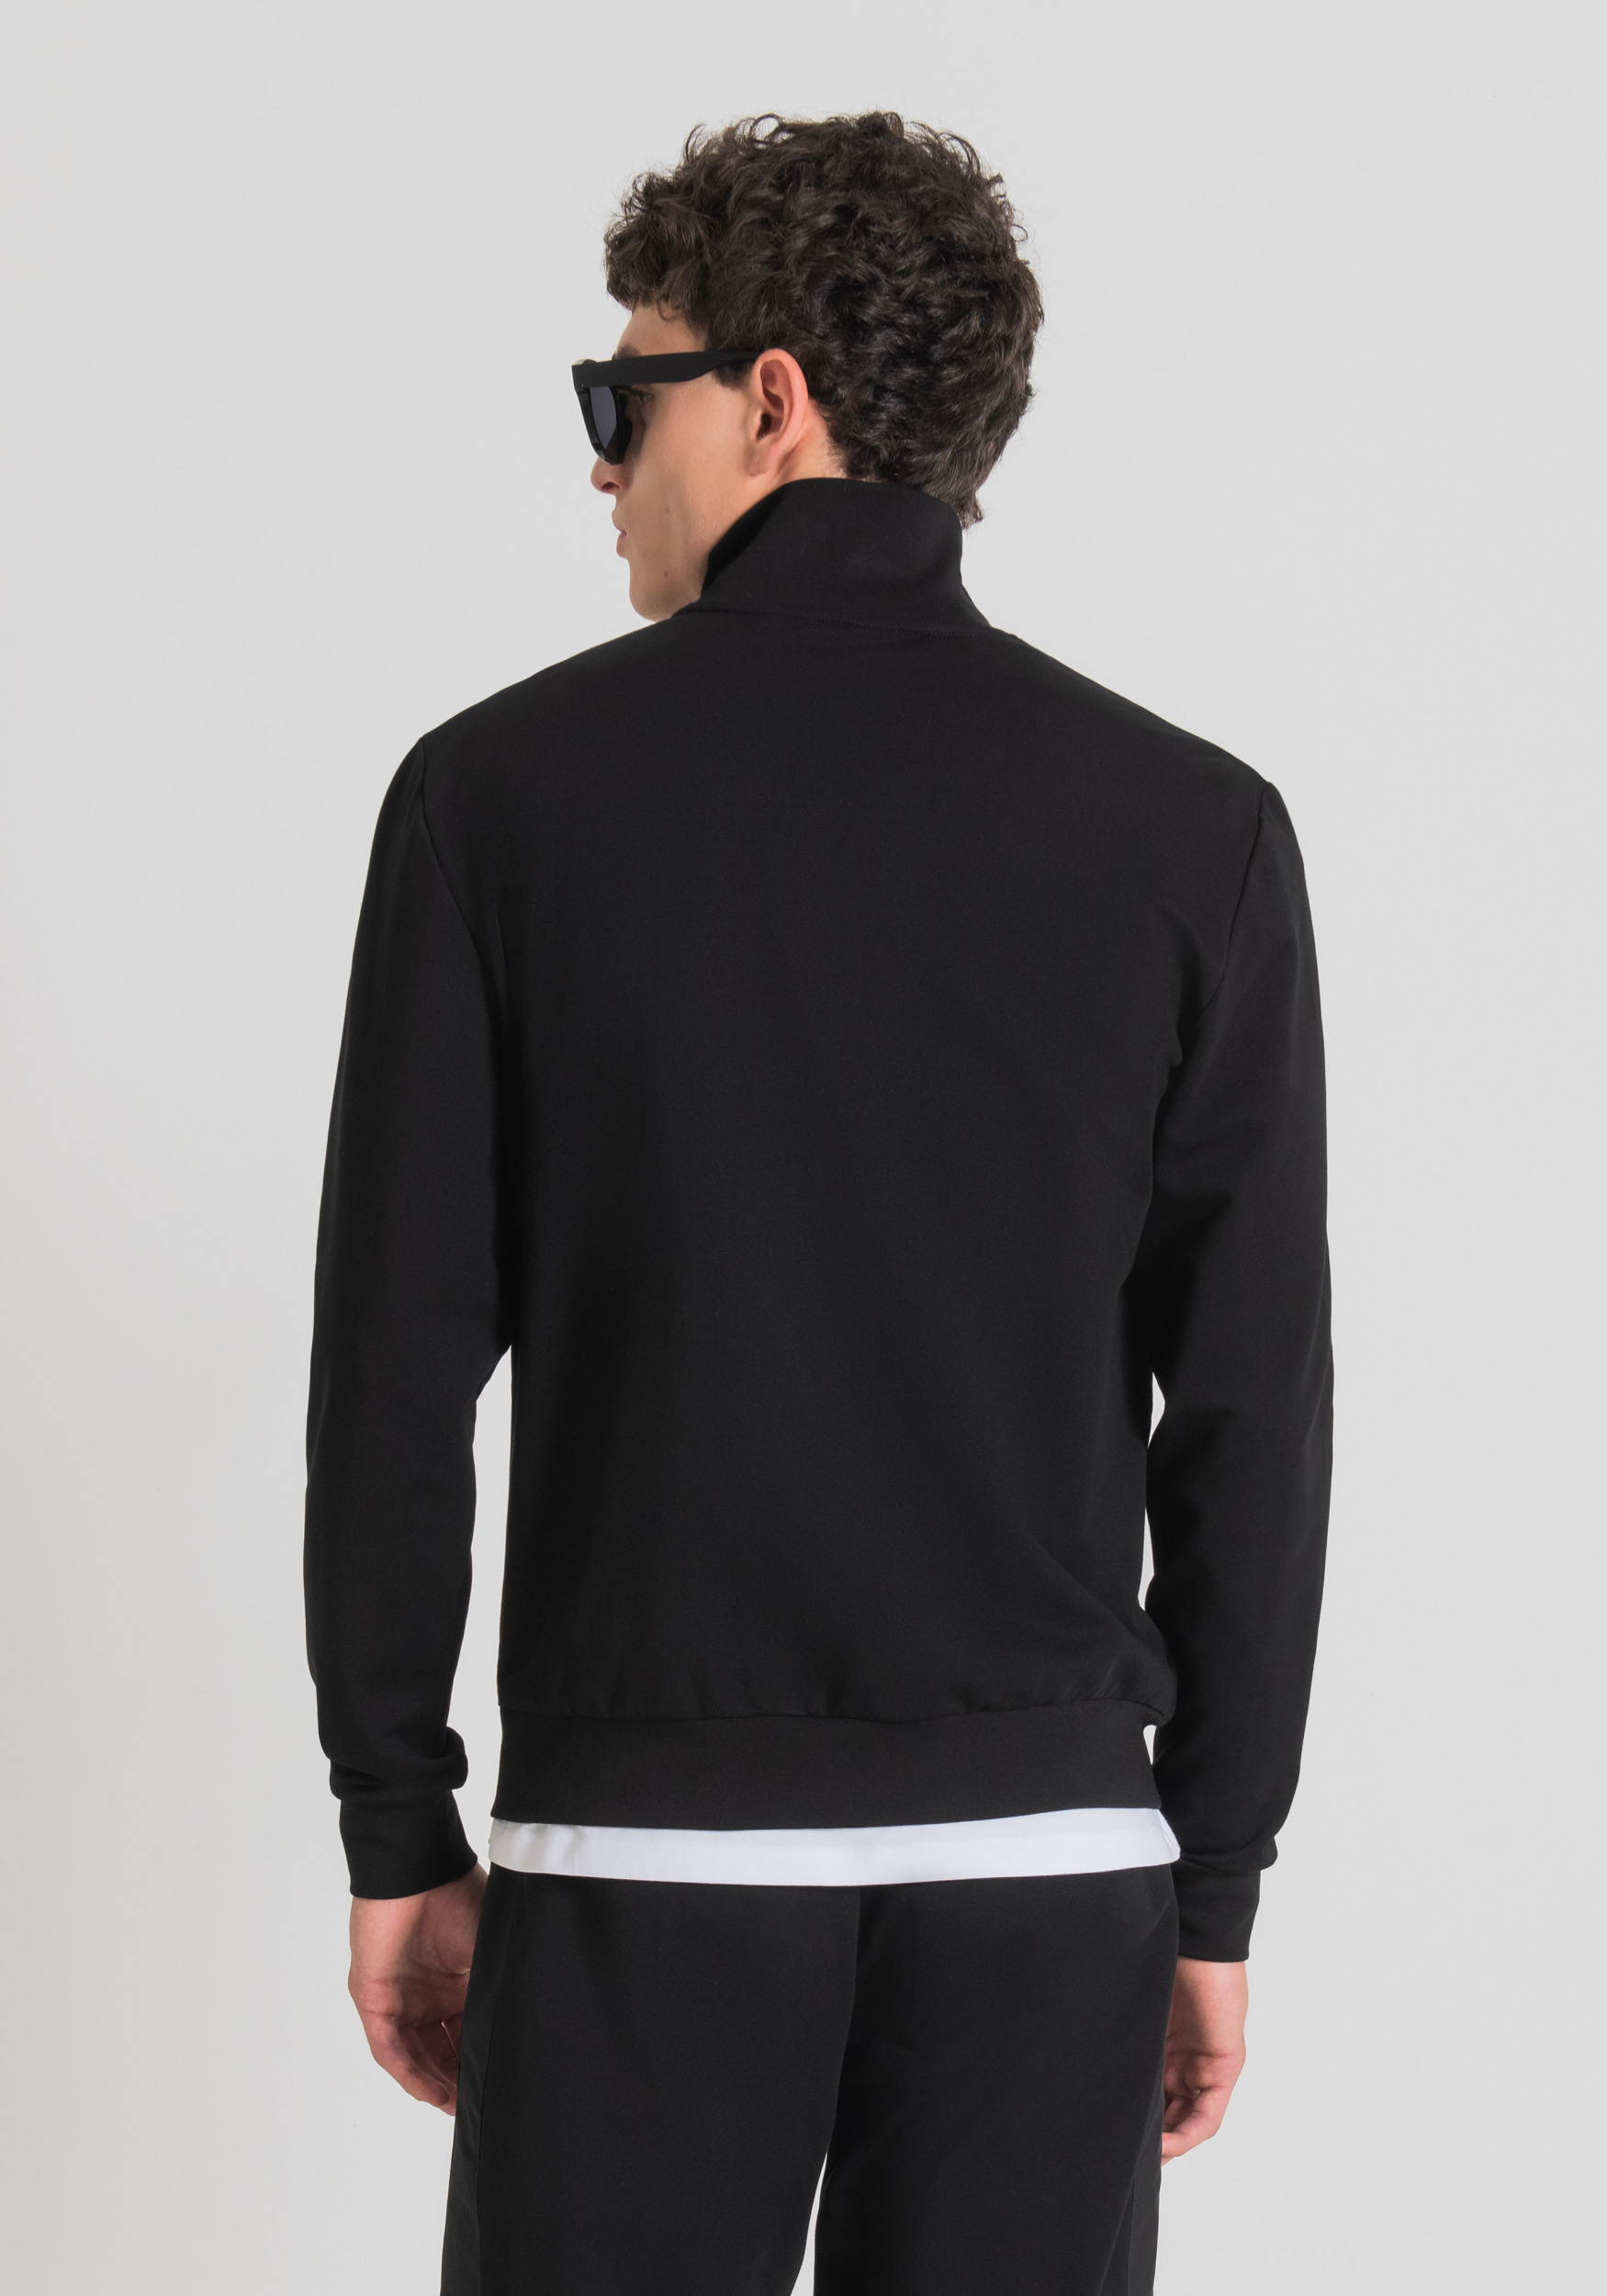 Antony Morato Sweat-Shirt Slim Fit A Col Montant En Coton Elastique Doux Et Poches Avant Dissimulees Noir | Homme Sweat-Shirts